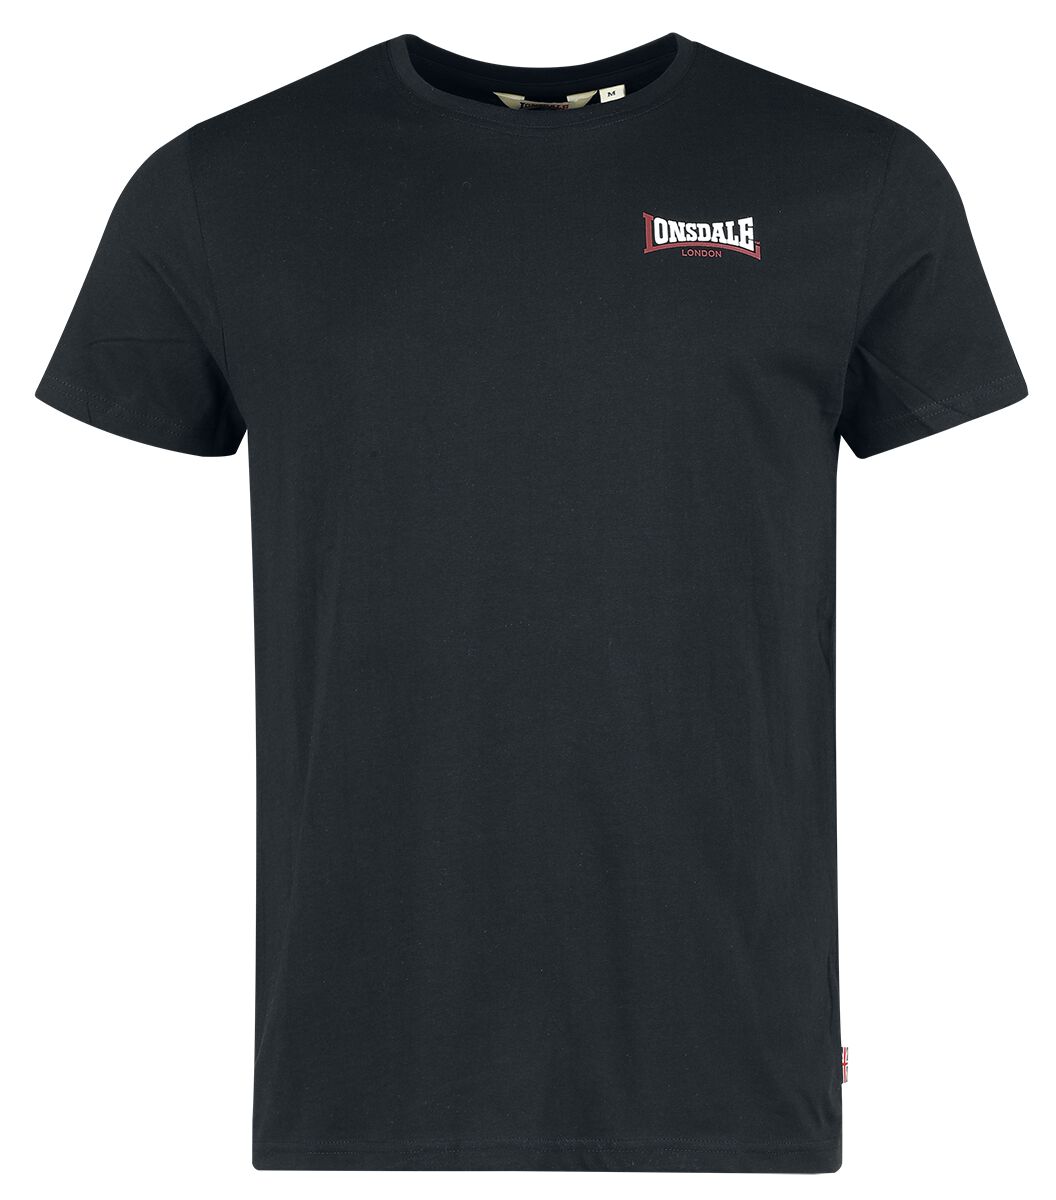 Lonsdale London T-Shirt - DALE - S bis XXL - für Männer - Größe M - schwarz